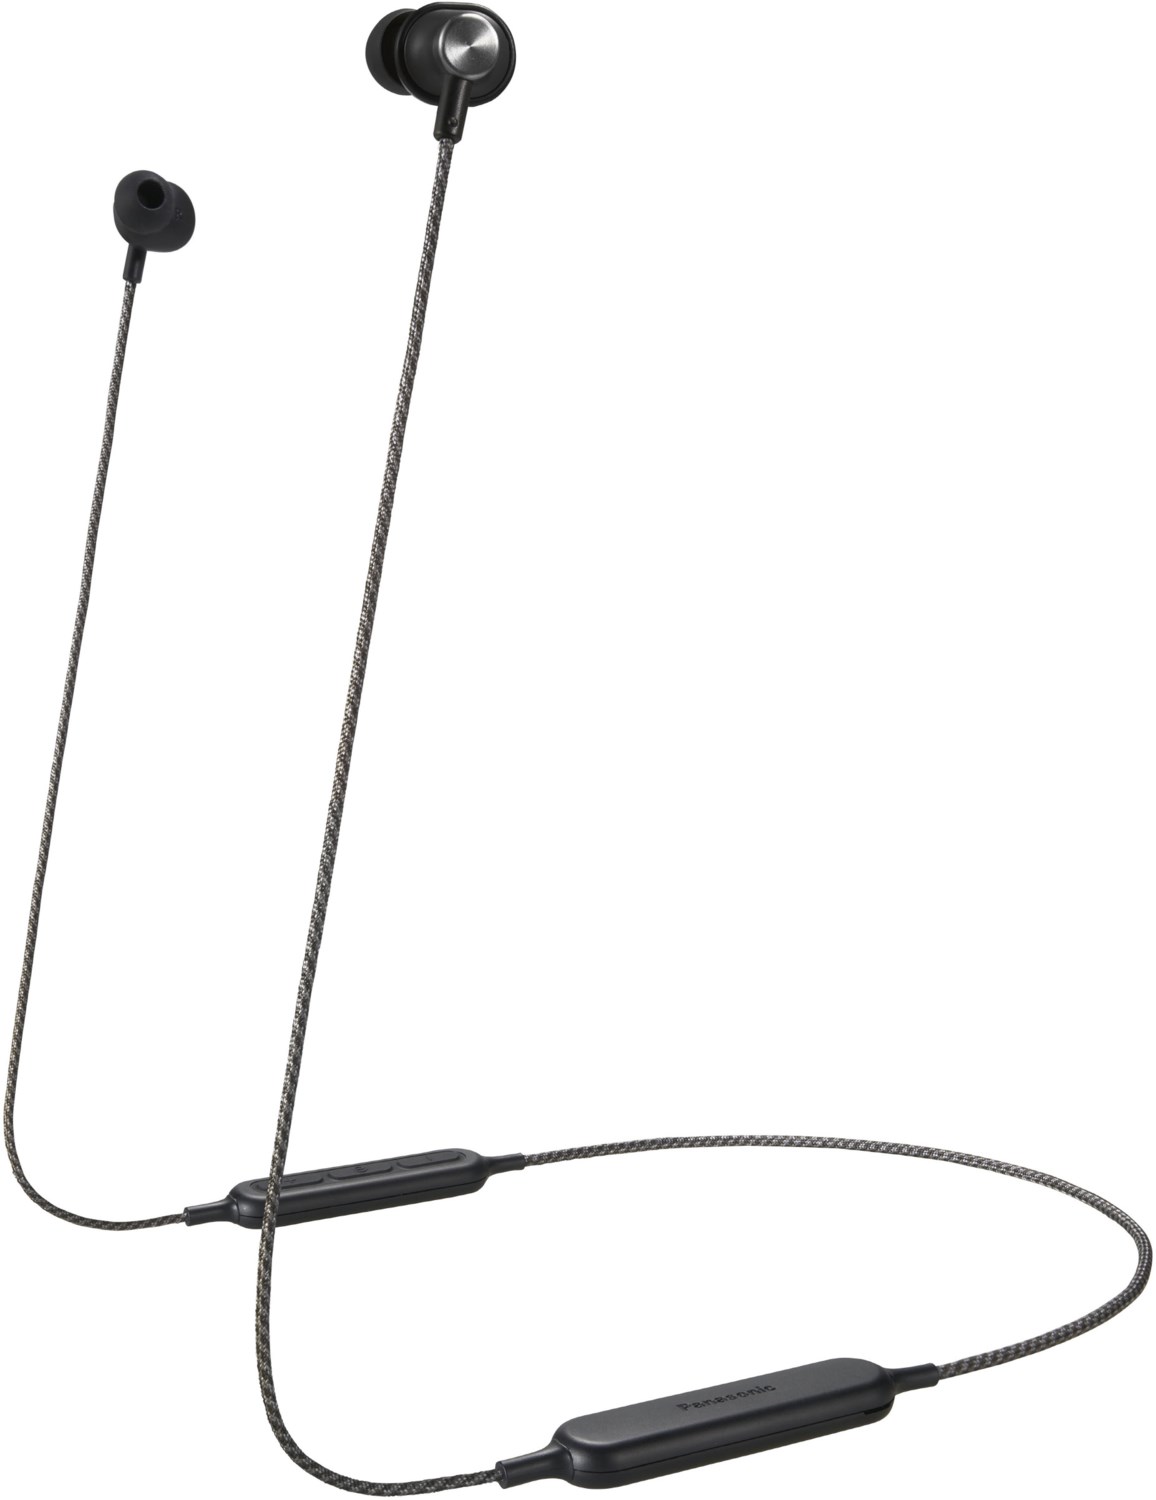 RP-HTX20BE-K Bluetooth-Kopfhörer schwarz von Panasonic